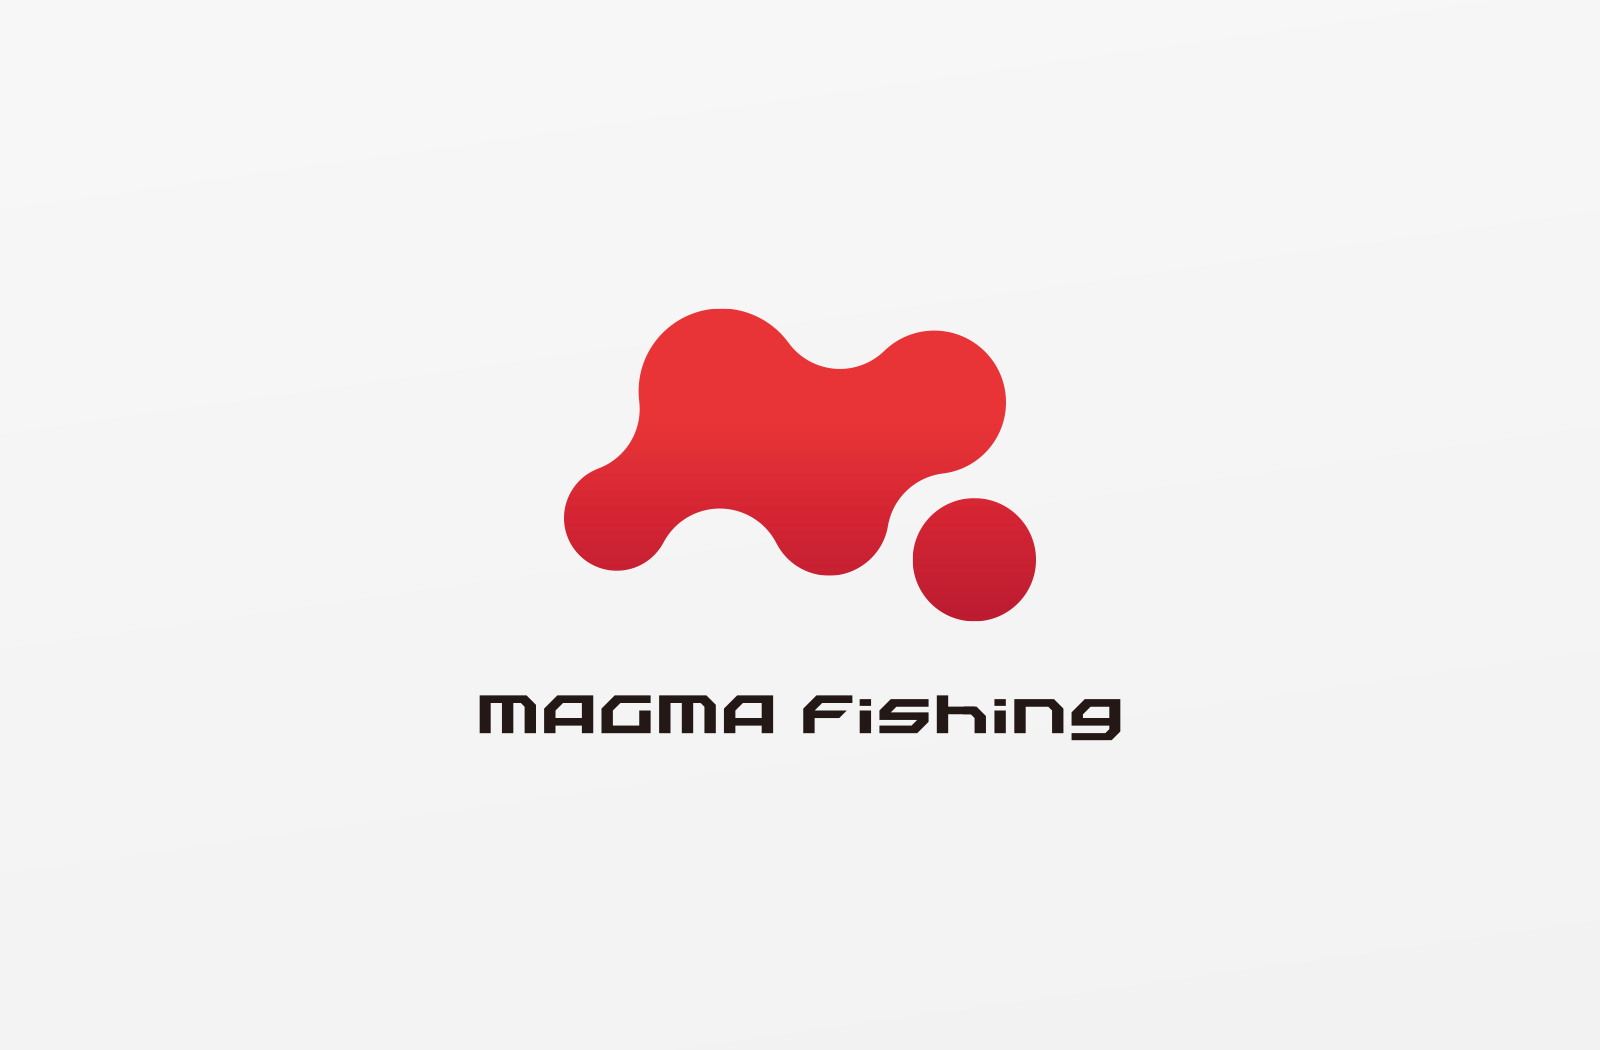 MAGMA Fishing　ロゴデザイン